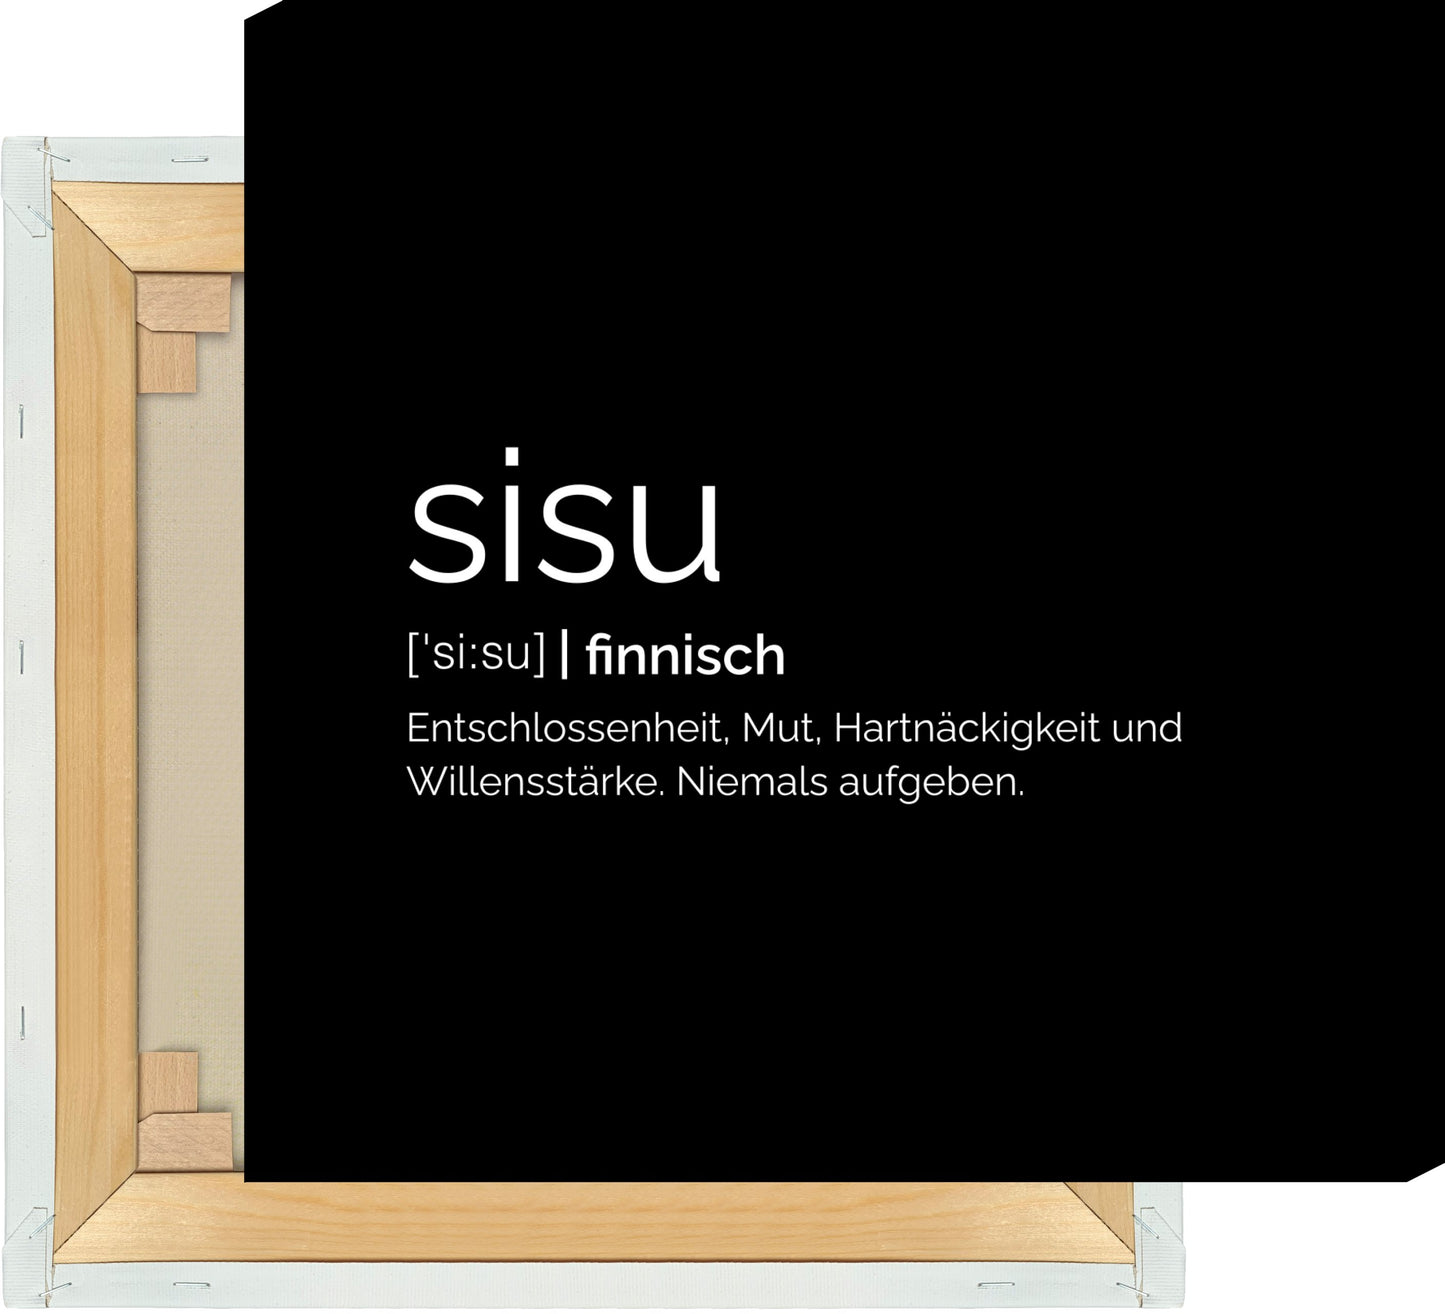 Leinwand Sisu (Finnisch: Entschlossenheit)